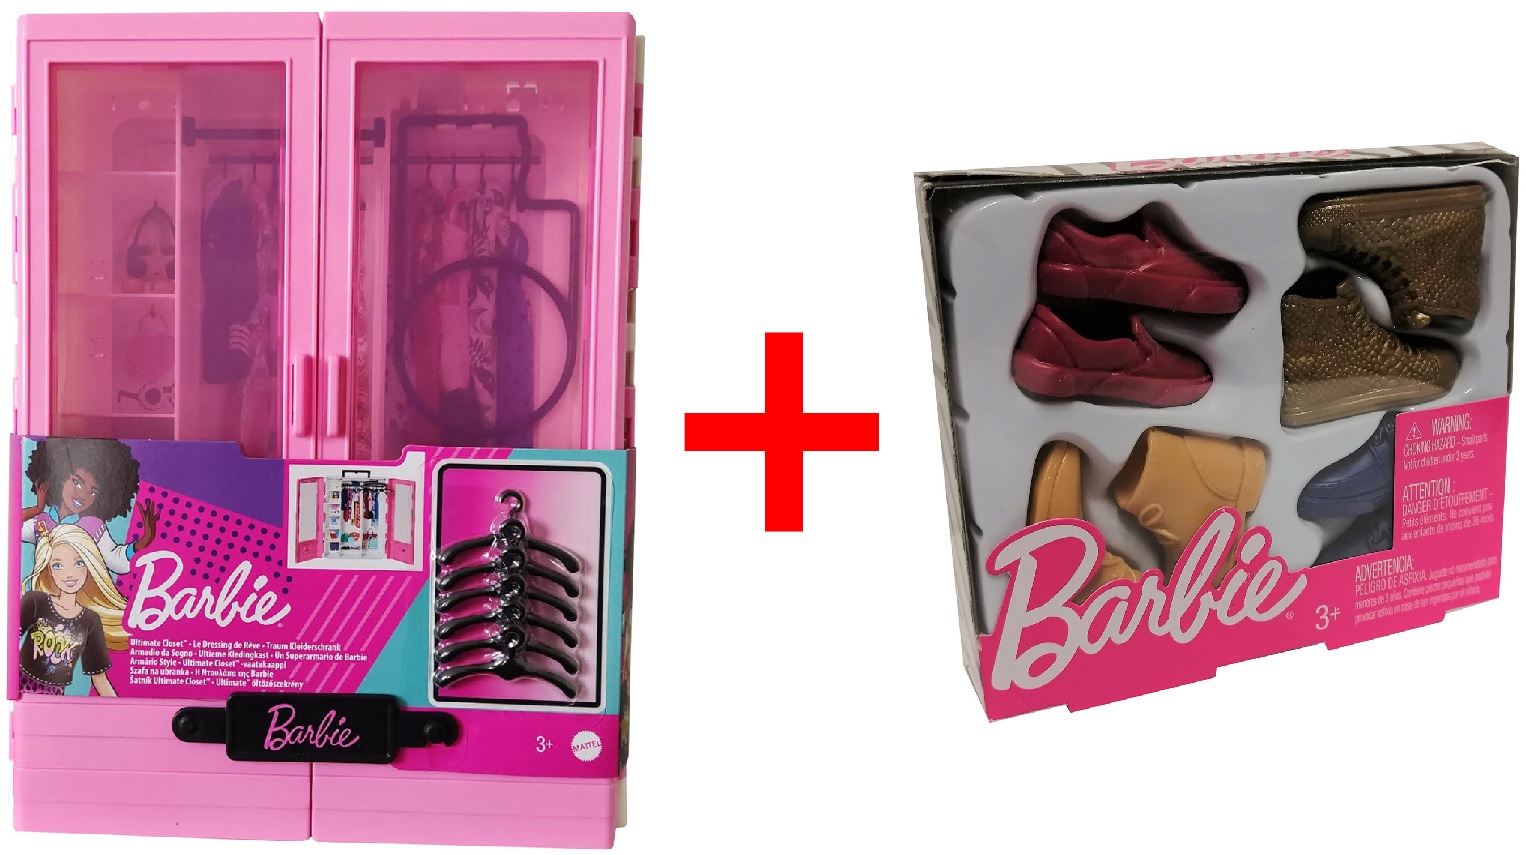 Mattel 2er-Set GBK11 Barbie Traum Kleiderschrank mit Kleiderbügel + GNJ69 Barbie Schuh-Set Ken 4 teilig Rot/Gold/Blau/Ocker Puppenzubehör GESCHENK-SET